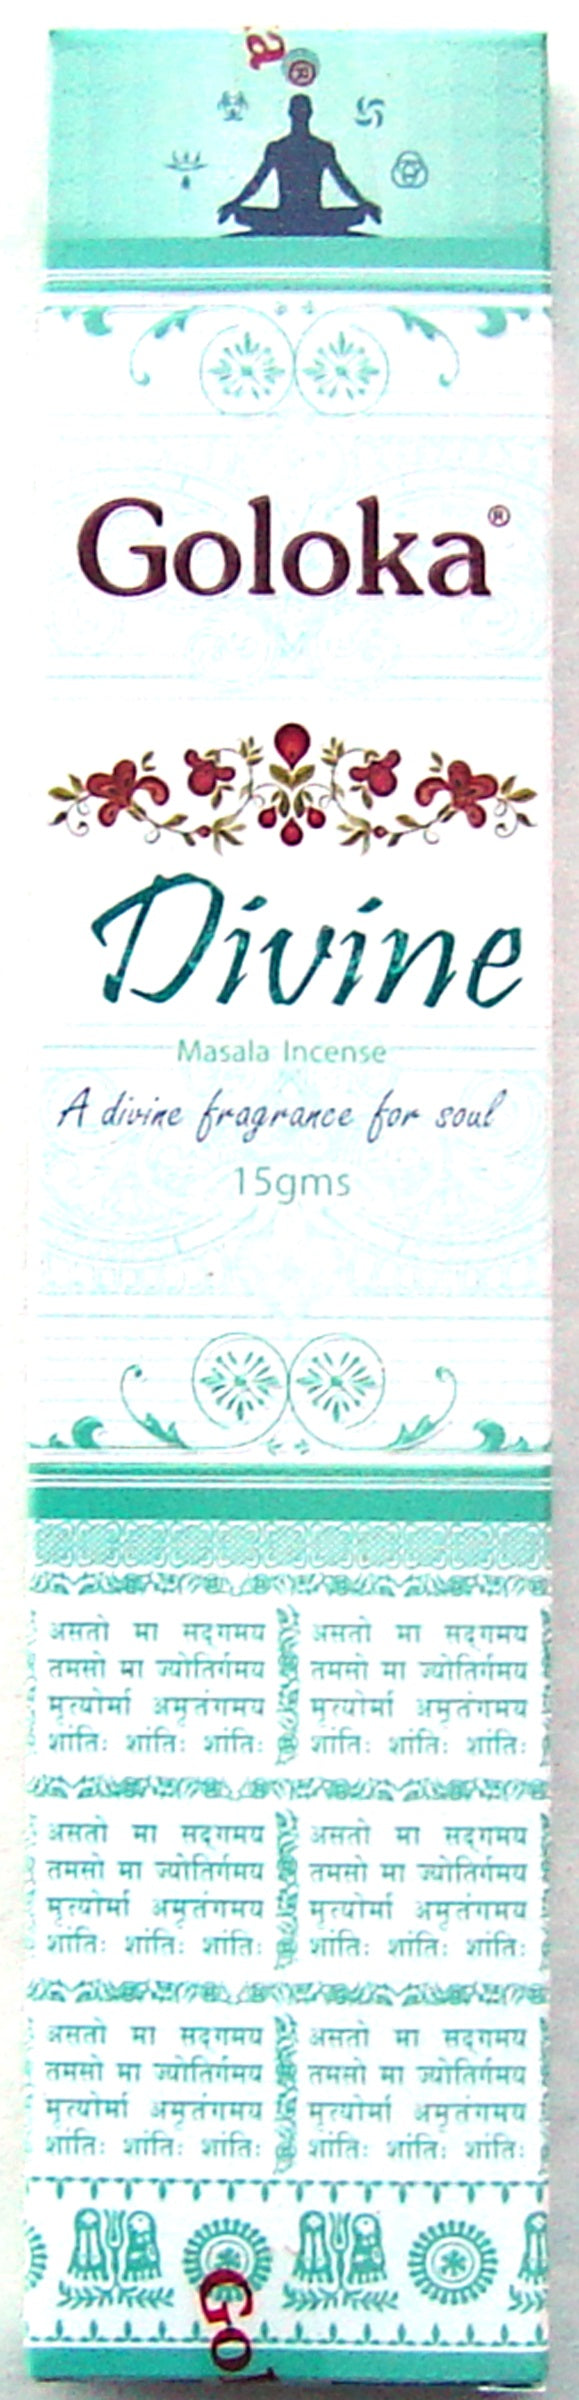 Goloka Masala - Divine